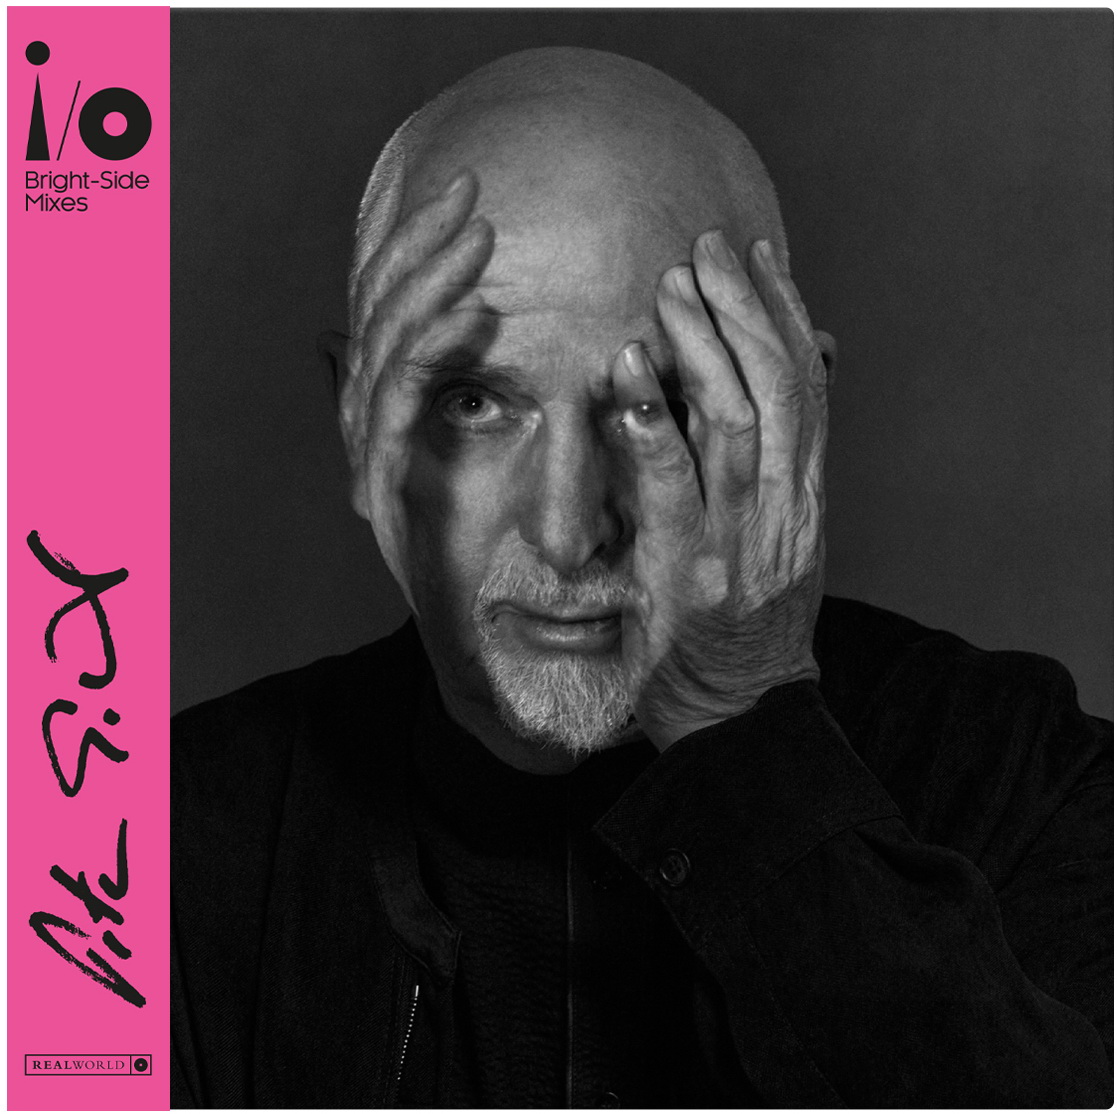 Vinile Peter Gabriel - Bright-Side Mixes 2 Lp NUOVO SIGILLATO EDIZIONE DEL SUBITO DISPONIBILE